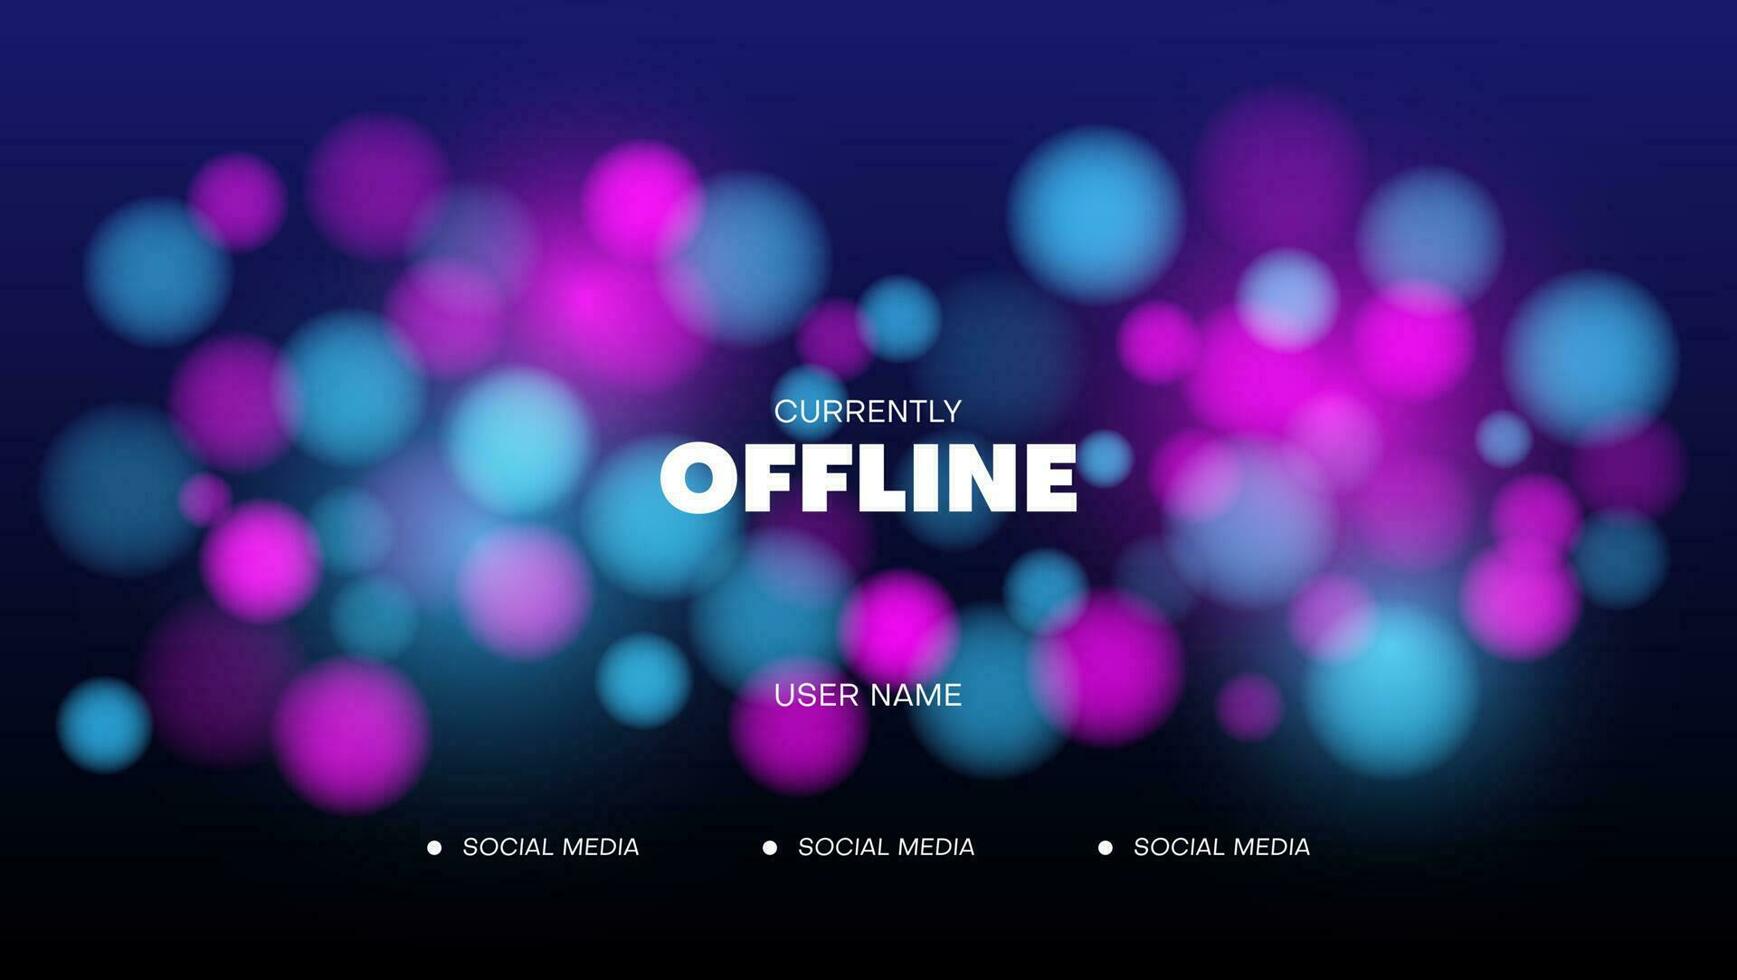 sfondo di streaming offline con banner di streaming light.gaming con luce di colore rosa e blu vettore